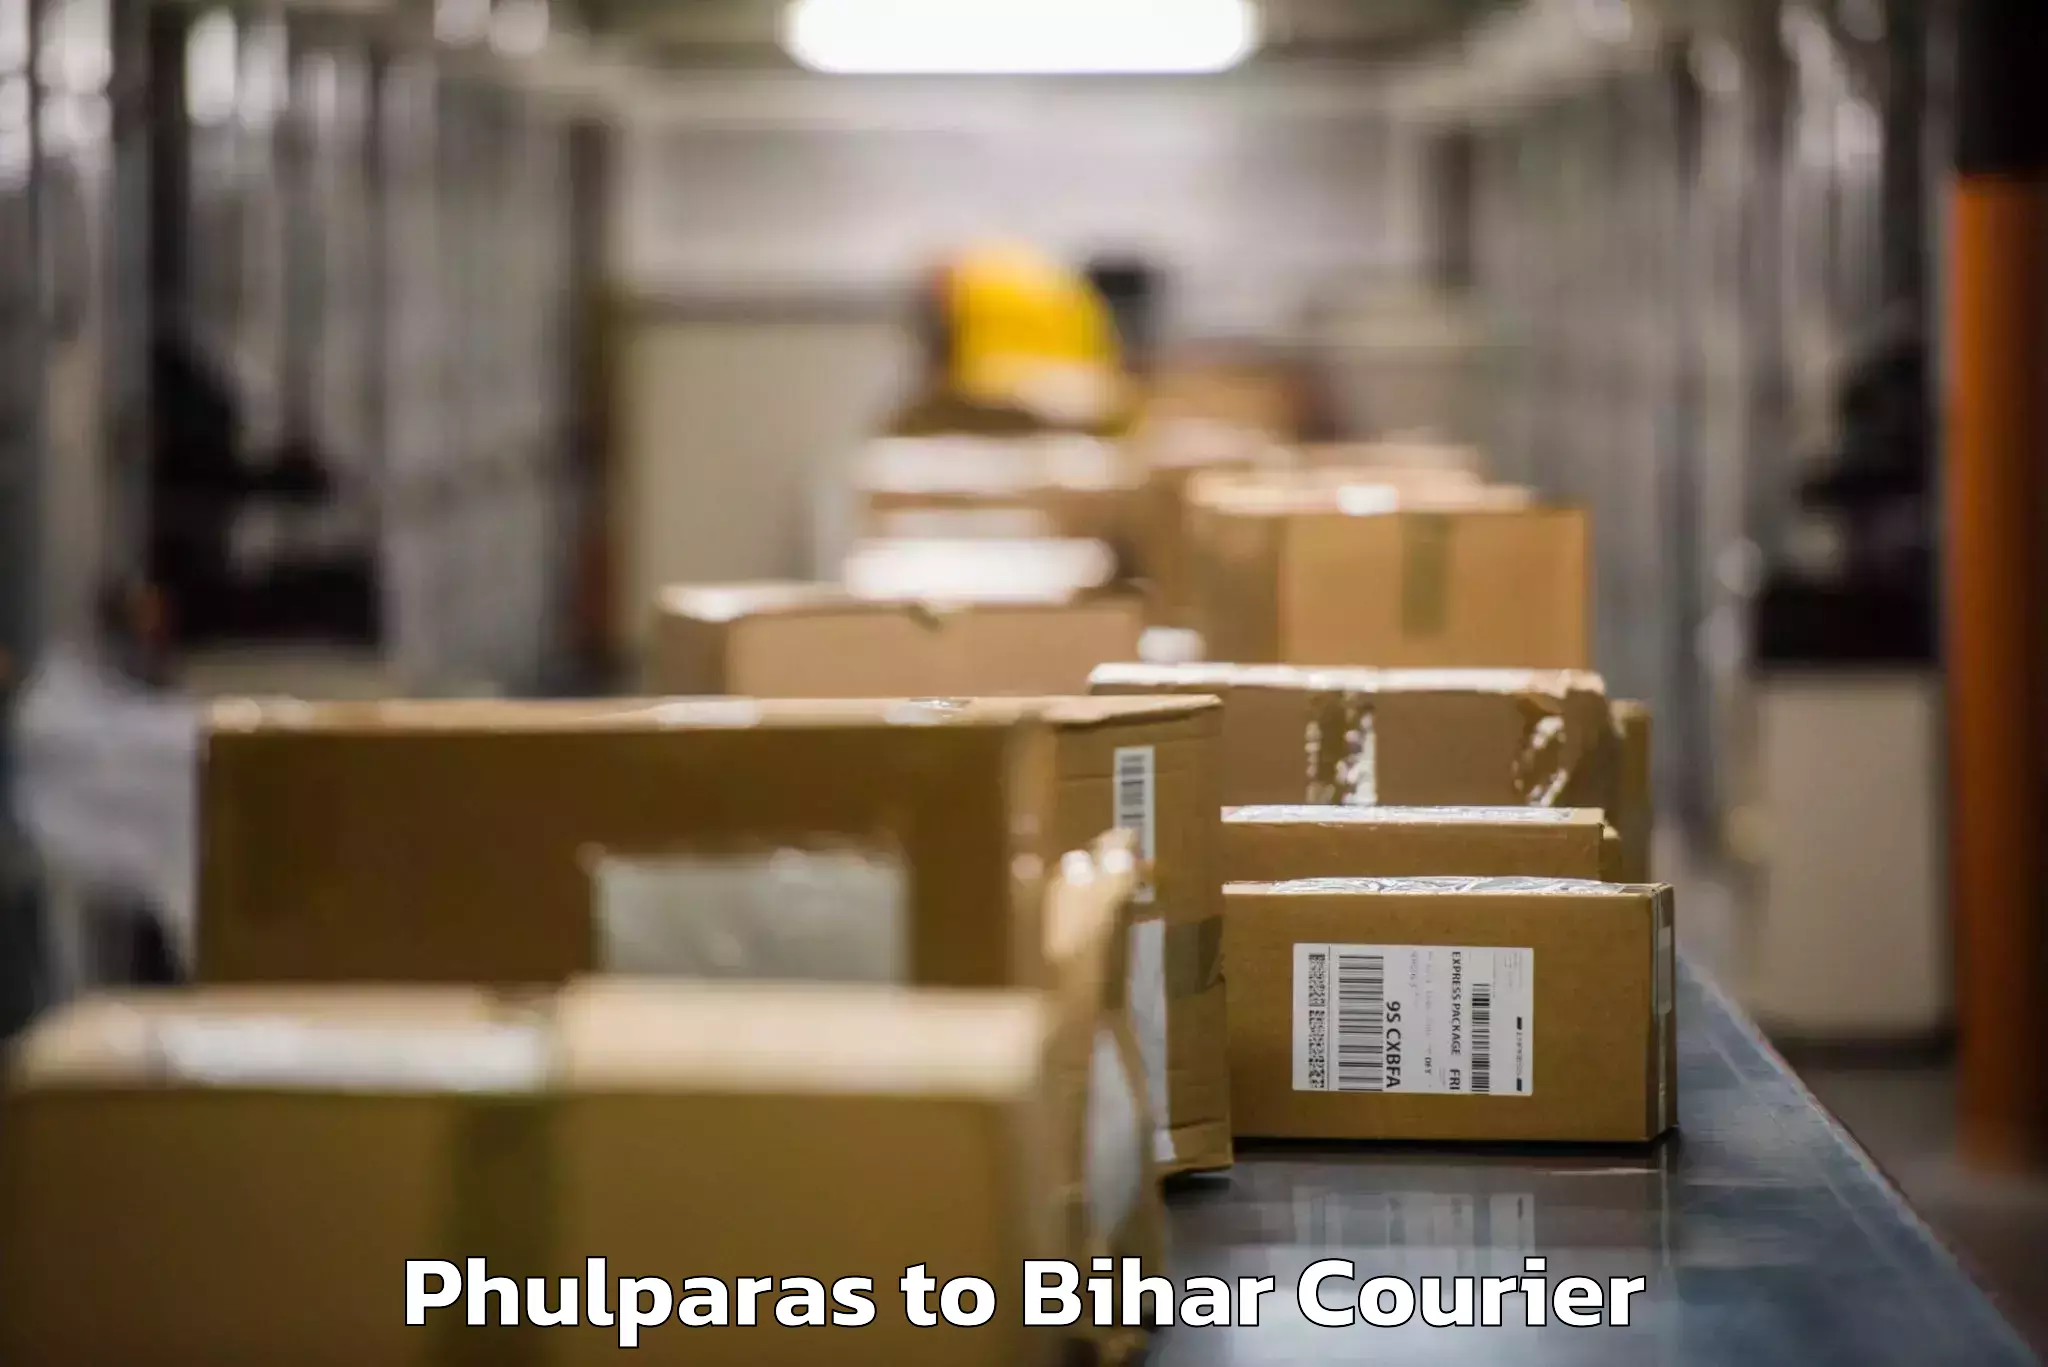 Baggage transport network Phulparas to Dhaka